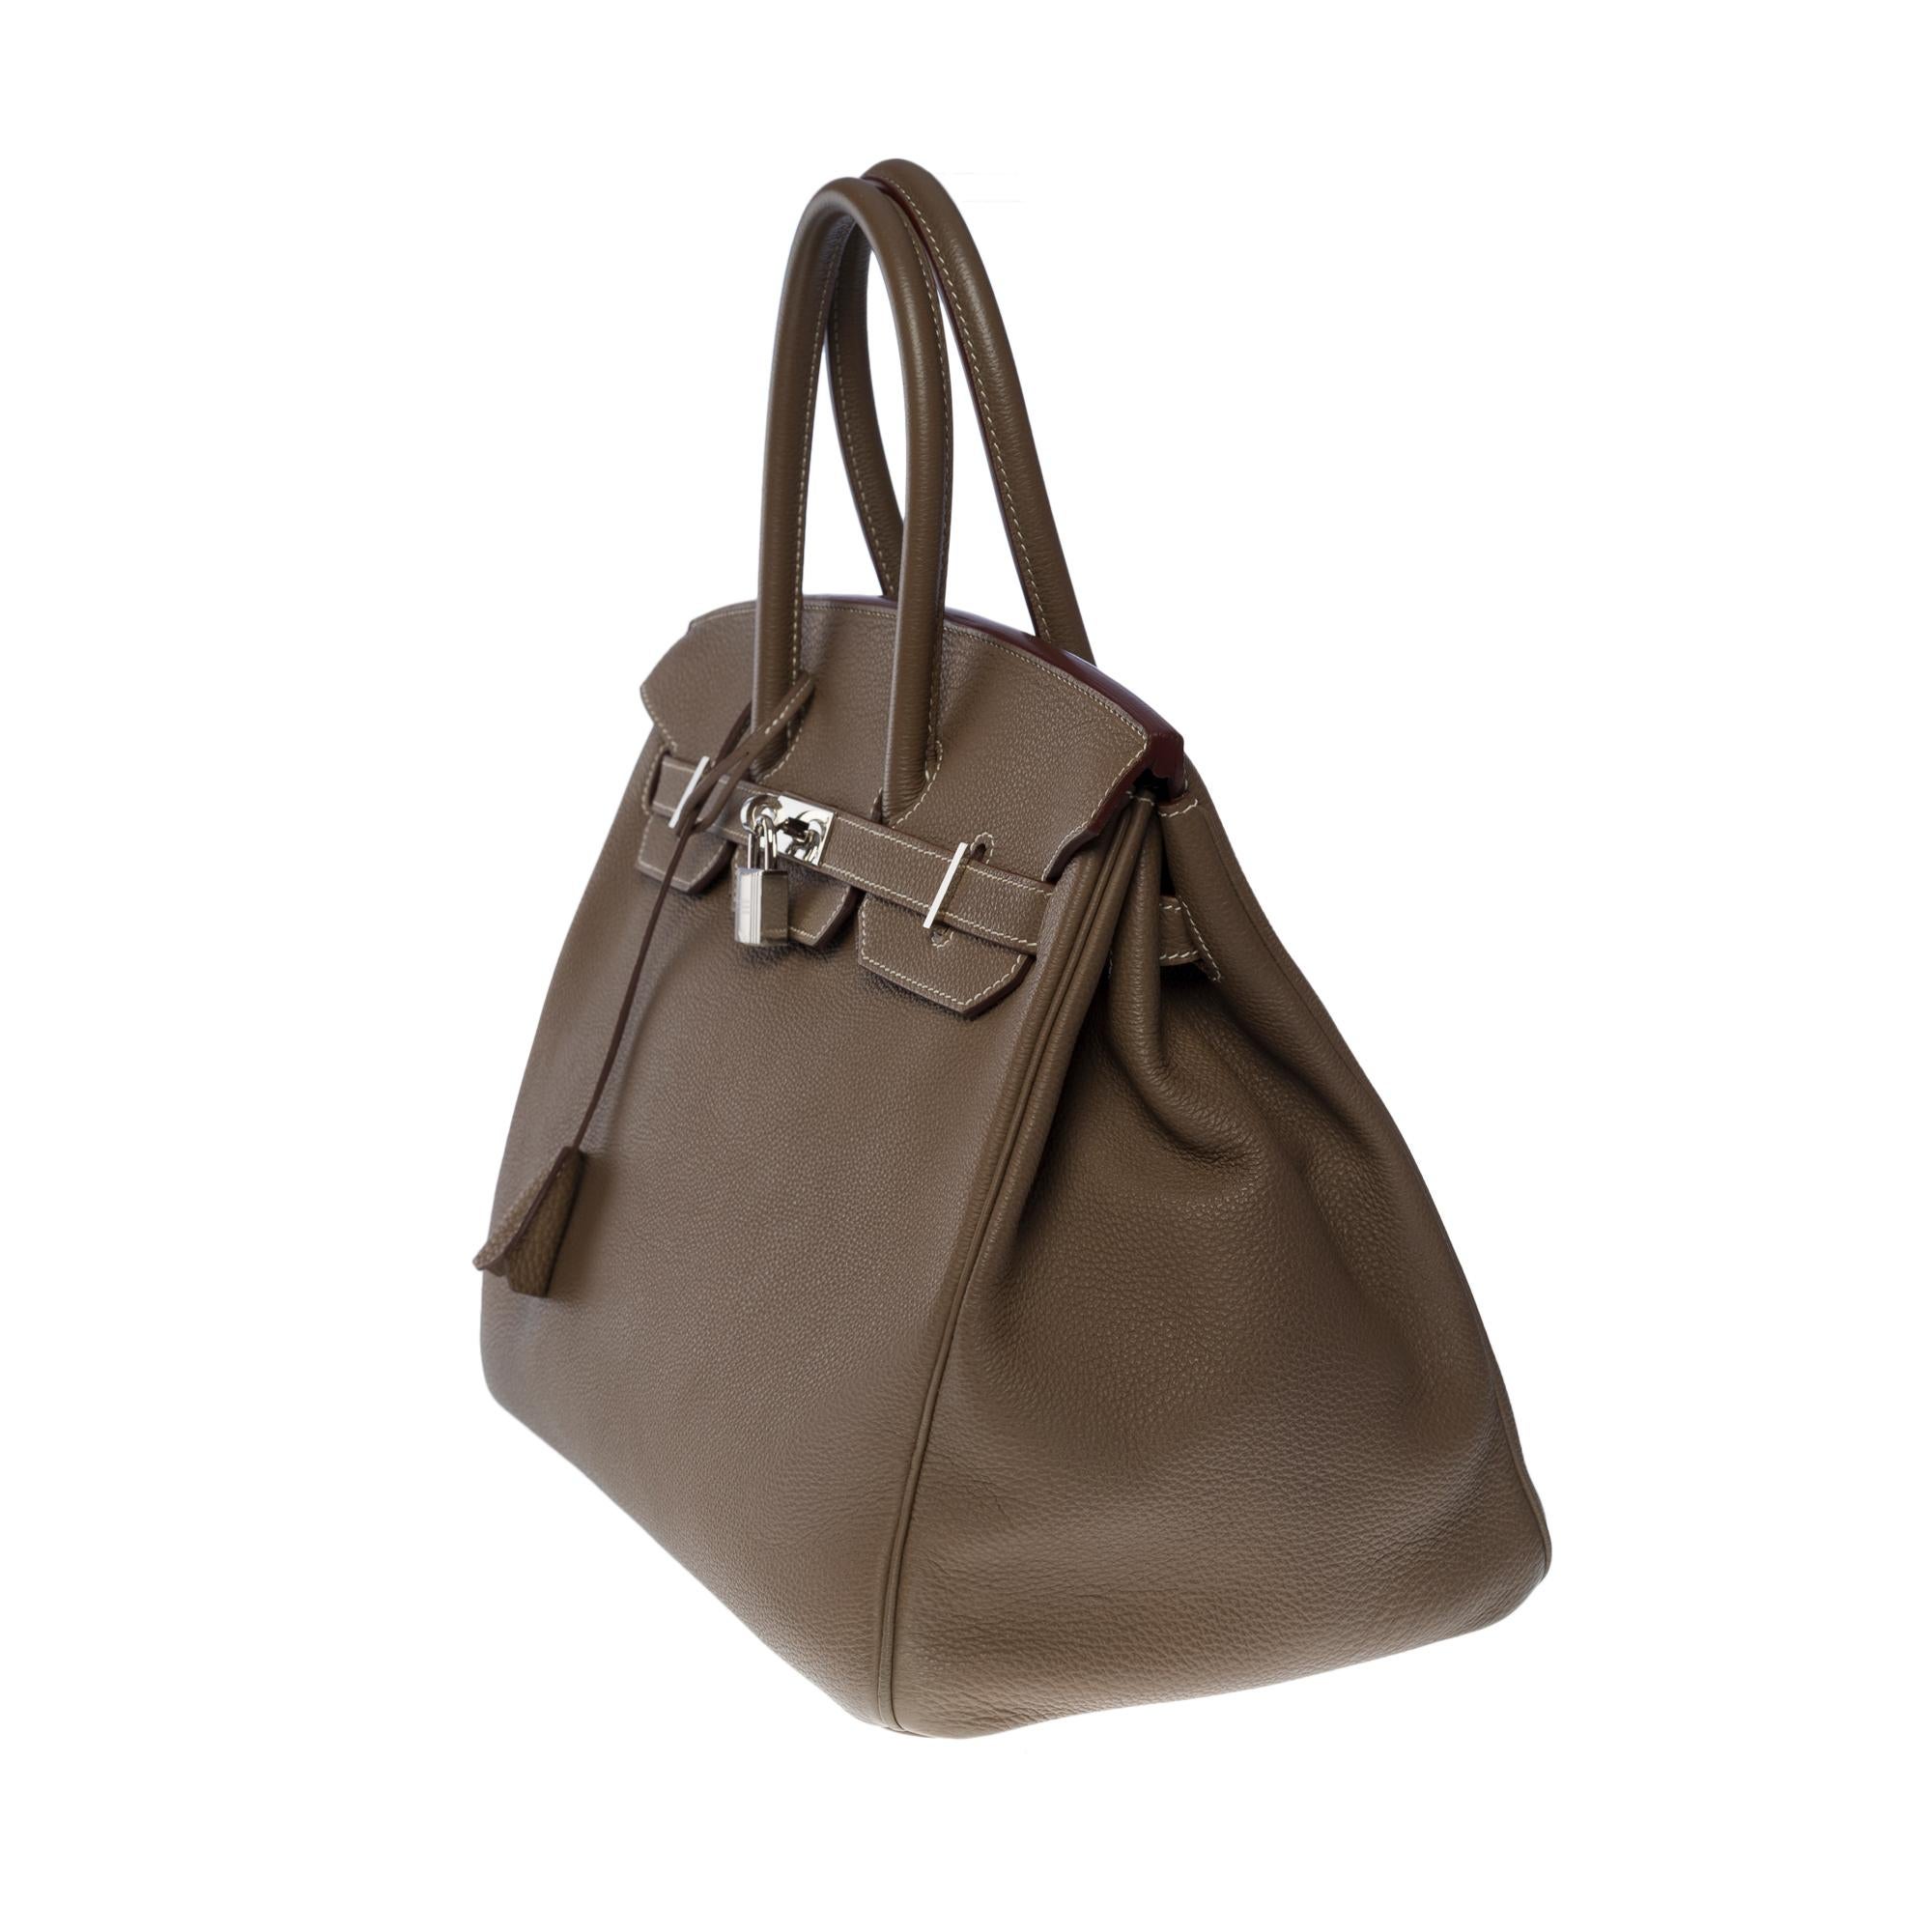 Stunning Hermès Birkin 35 handbag in etoupe Togo leather, SHW In Excellent Condition In Paris, IDF